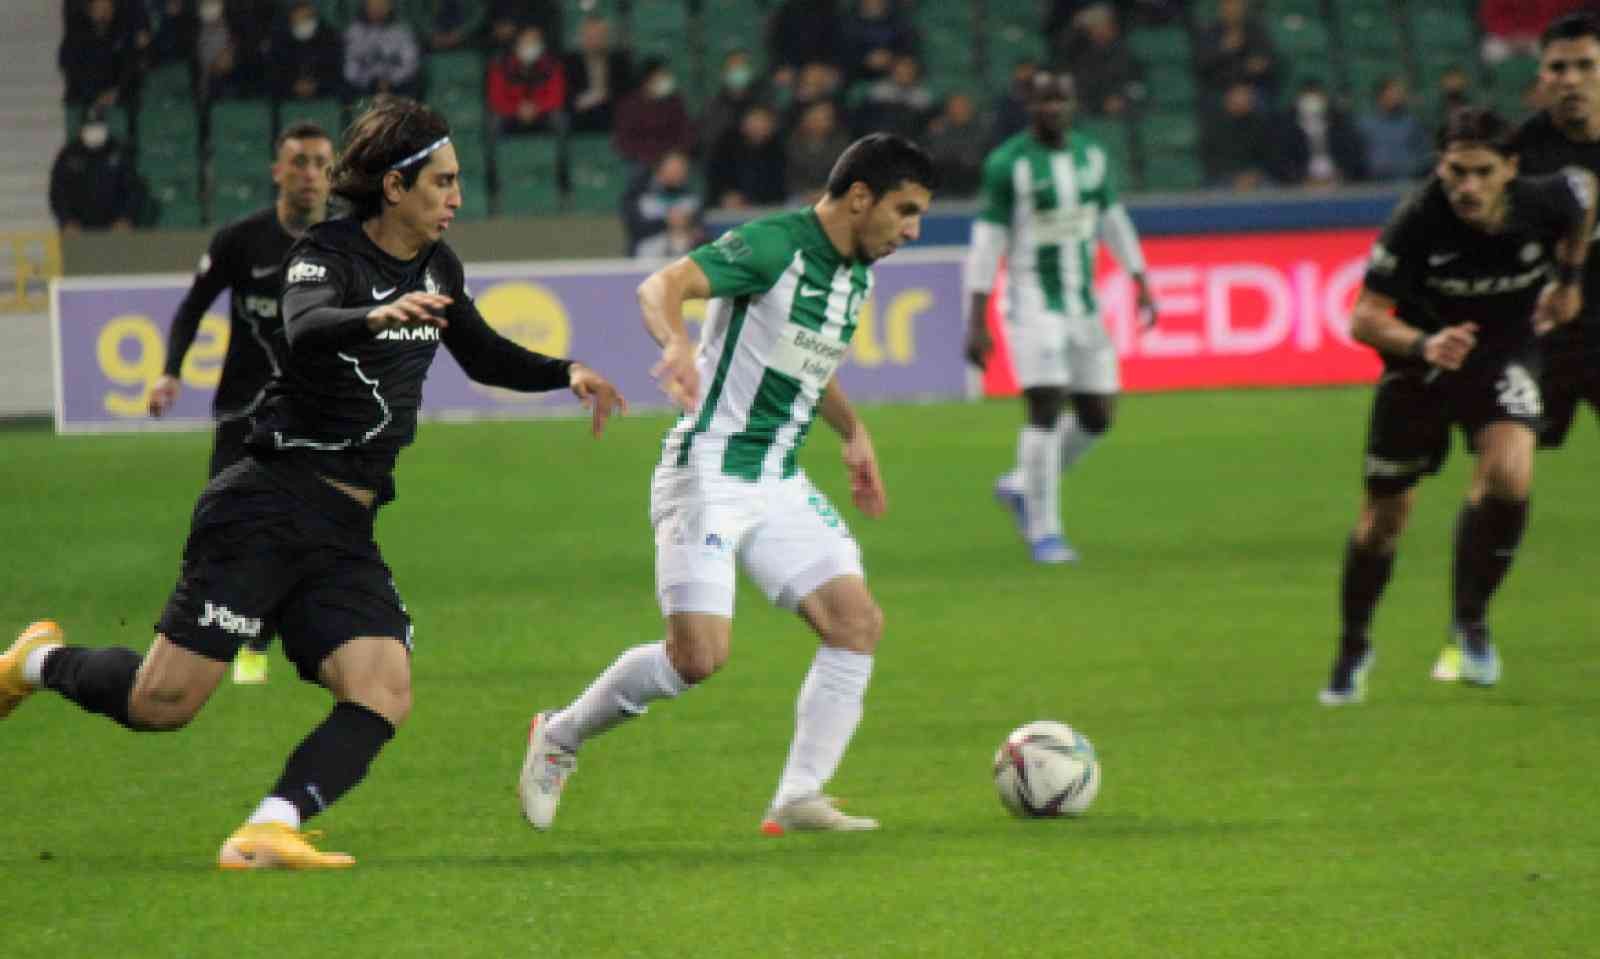 Süper Lig: GZT Giresunspor: 1 - Altay: 0 (ilk yarı) #giresun